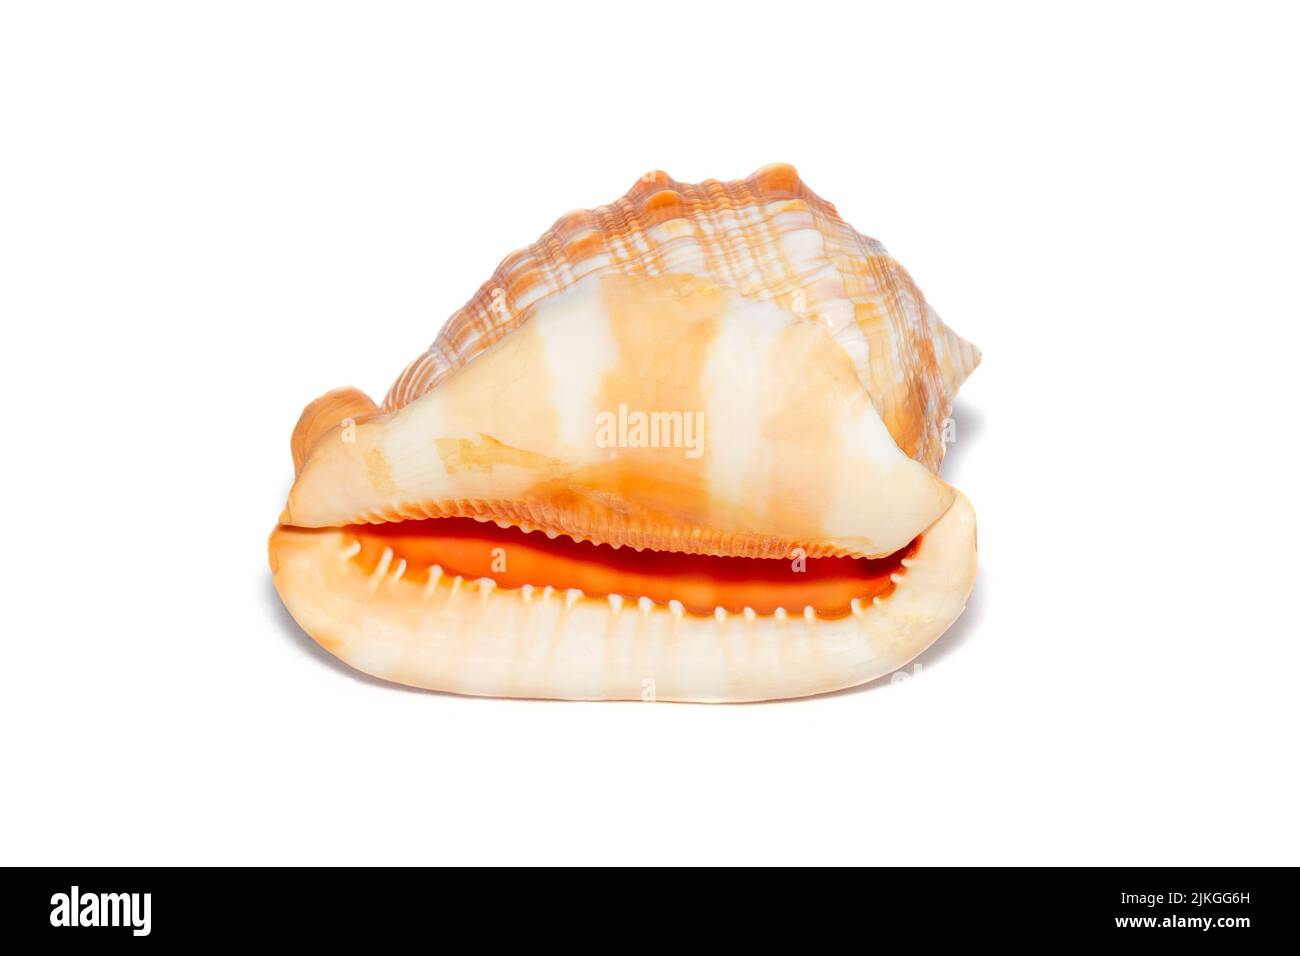 Bild einer orangen Cassis cornuta auf weißem Hintergrund. Unterwassertiere. Muscheln. Gehörnte Helmschale. Stockfoto